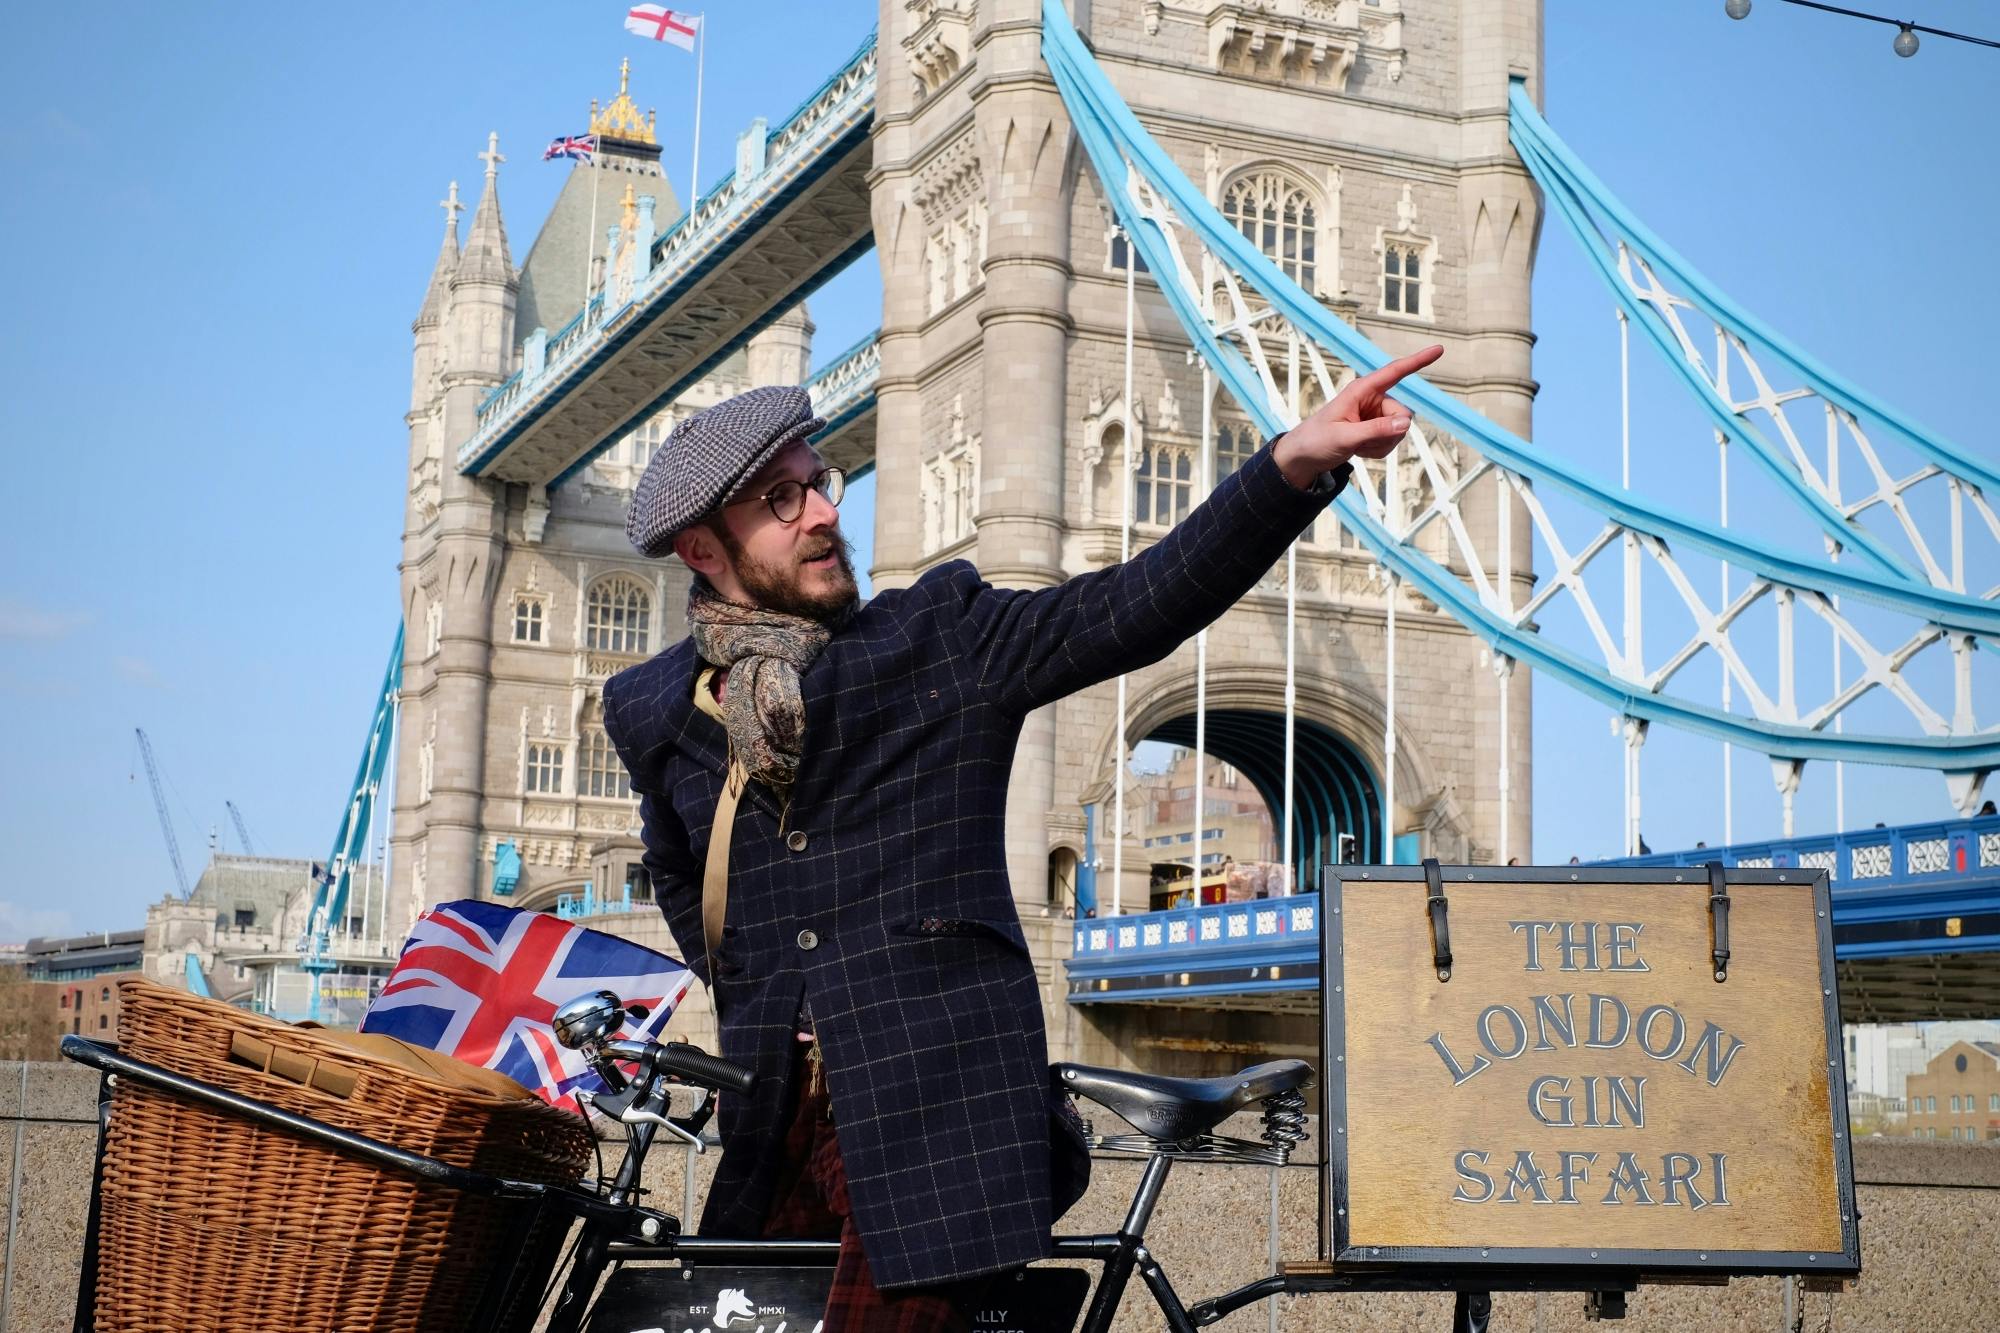 Private "London gin safari" bike tour with tastings